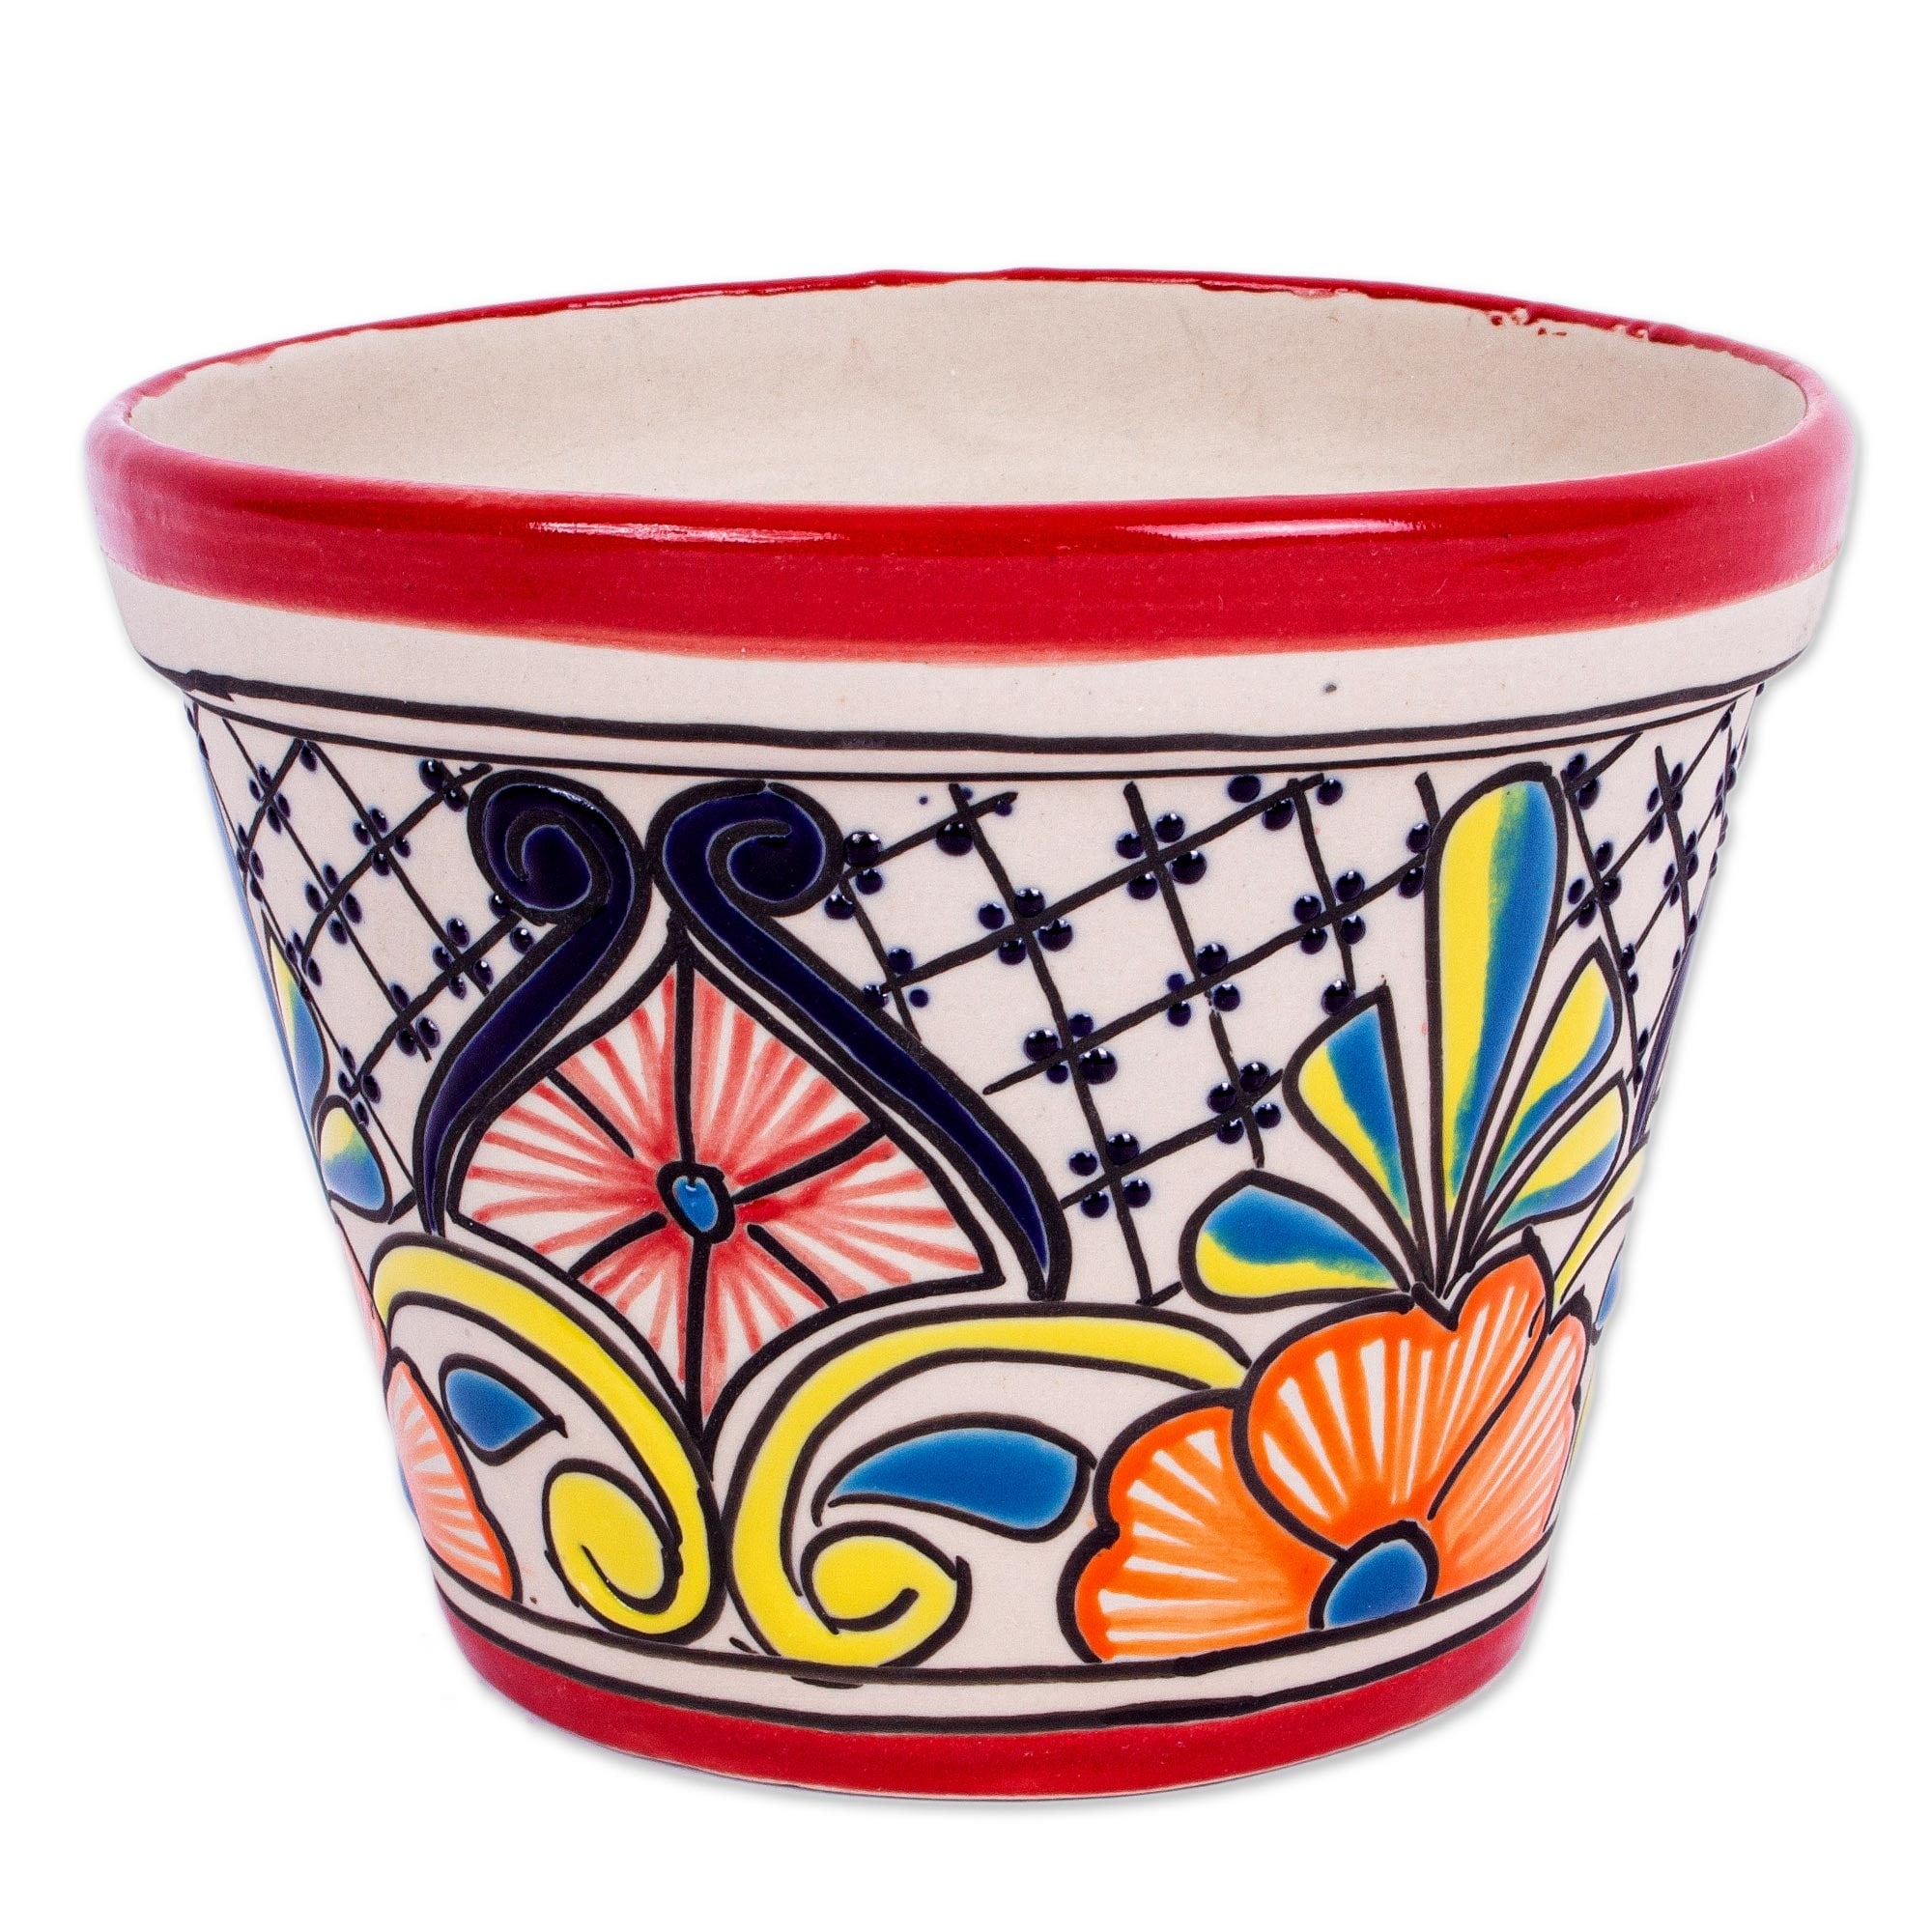 Novica Handmade Colorful Mercado Ceramic Flower Pot (5.5 Inch Diameter)  Bed Bath  Beyond 36503431